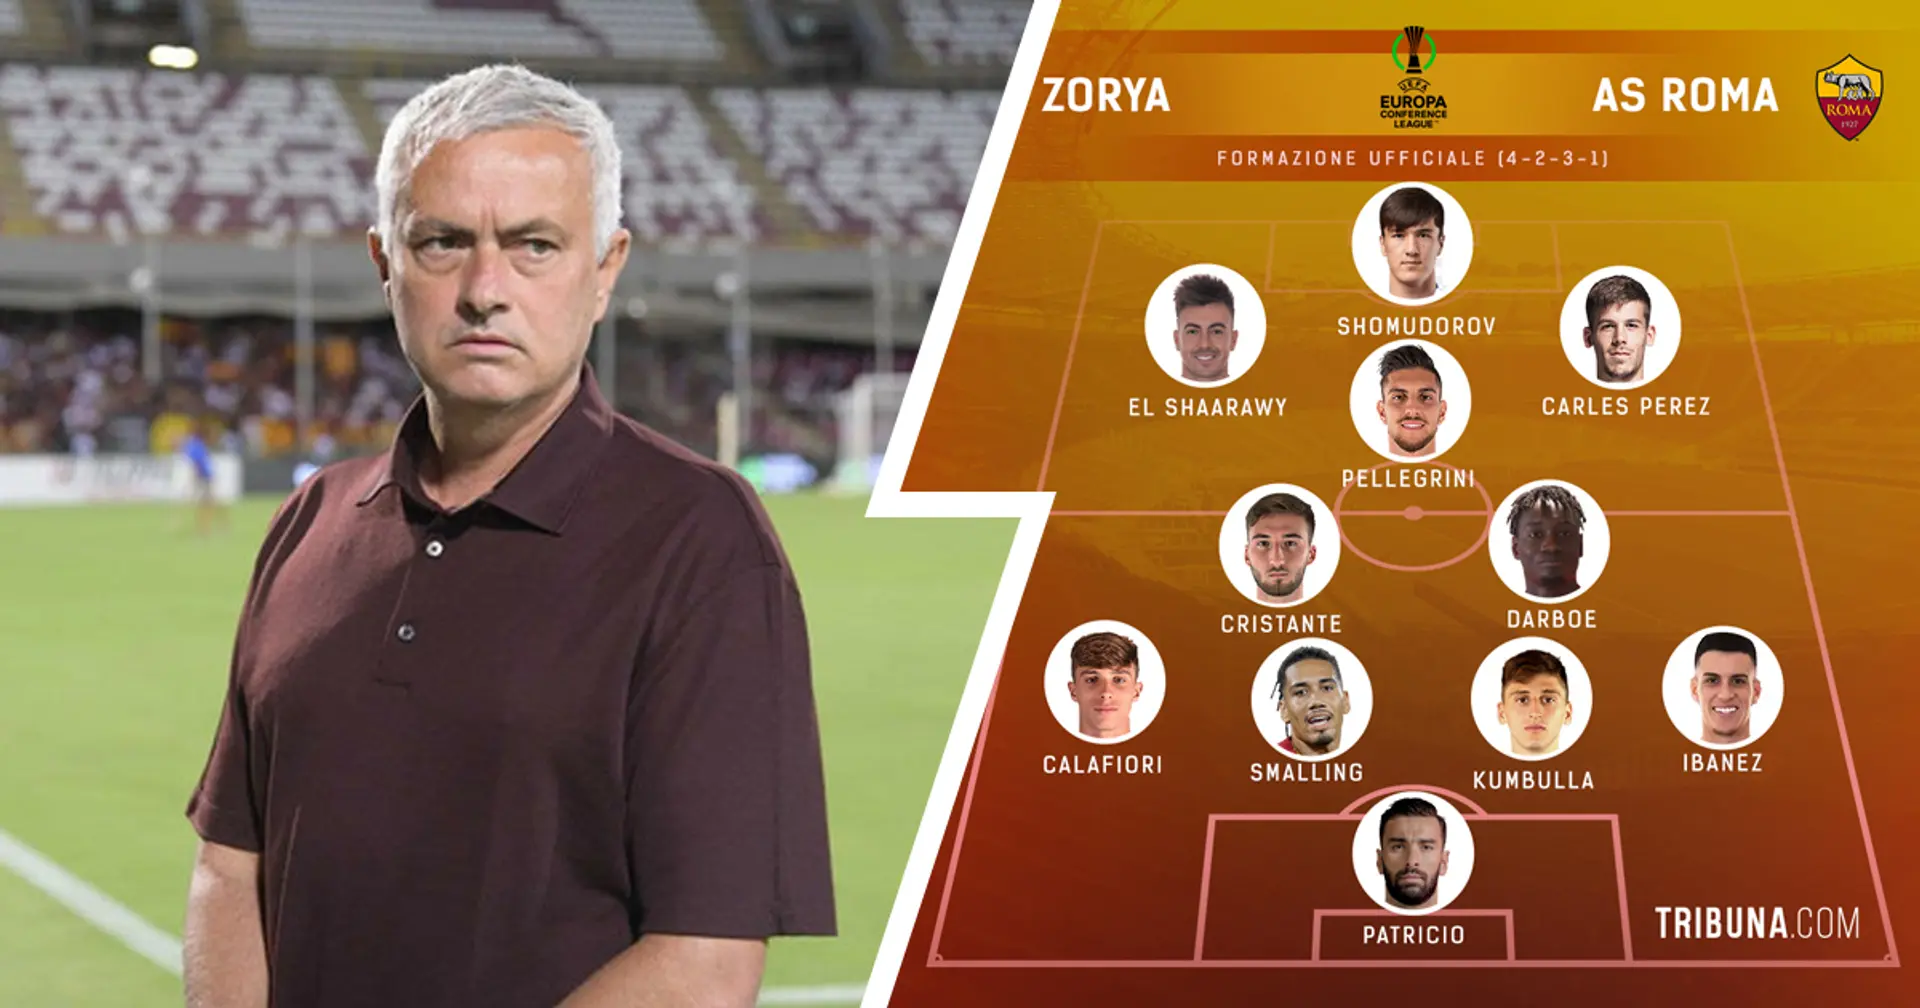 UFFICIALE | La formazione scelta da Mourinho contro lo Zorya: Darboe e Kumbulla dal 1', Shomurodov centravanti